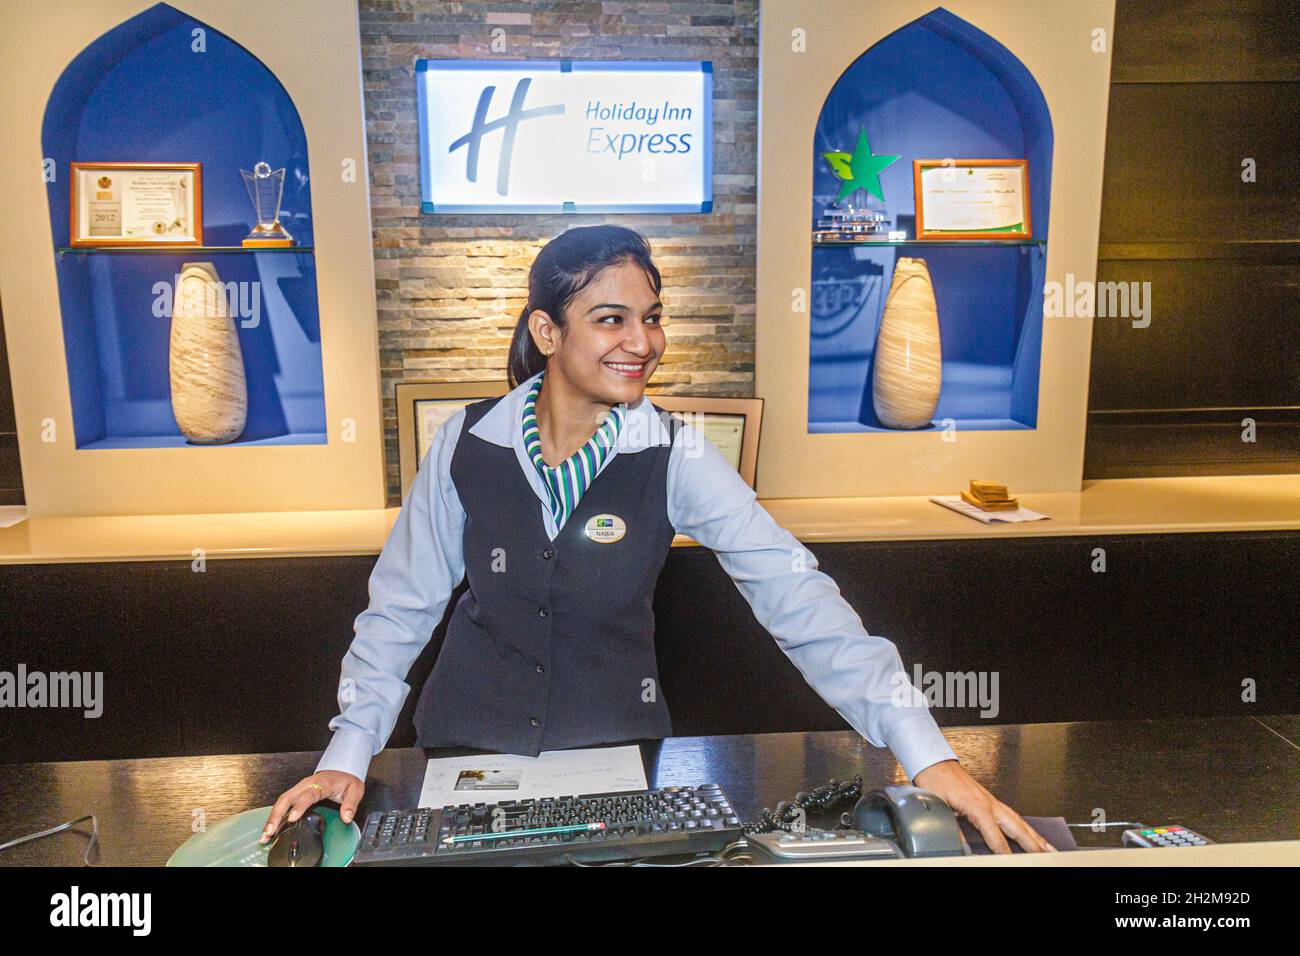 Dubai UAE, Garhoud, Holiday Inn Express Hotellobby, muslimische weibliche Rezeptionisten, Check-in Rezeption Reservierung Angestellte lächelnd Arbeiter drinnen Stockfoto